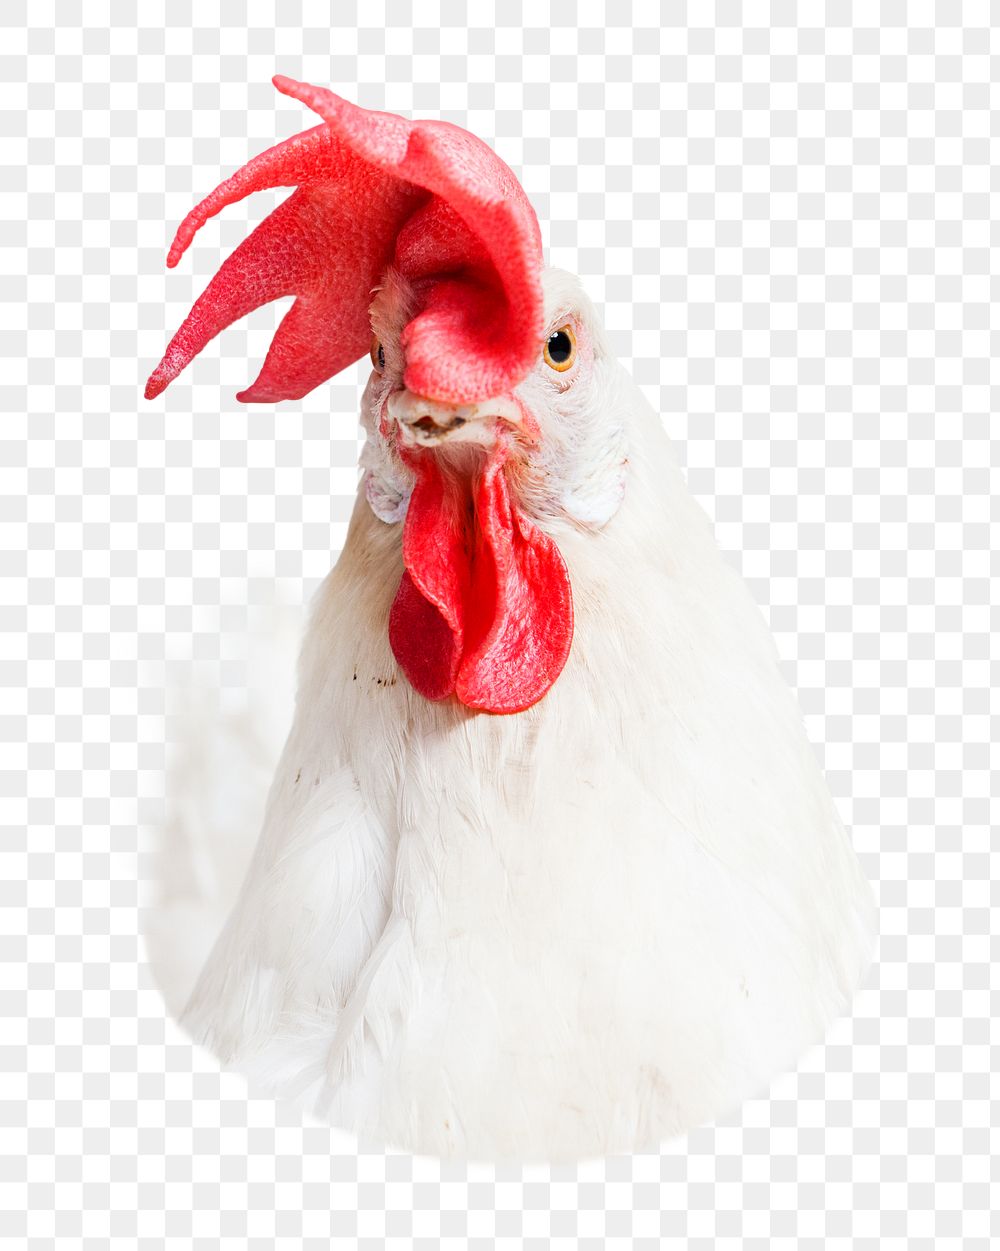 Chicken head png sticker, transparent background